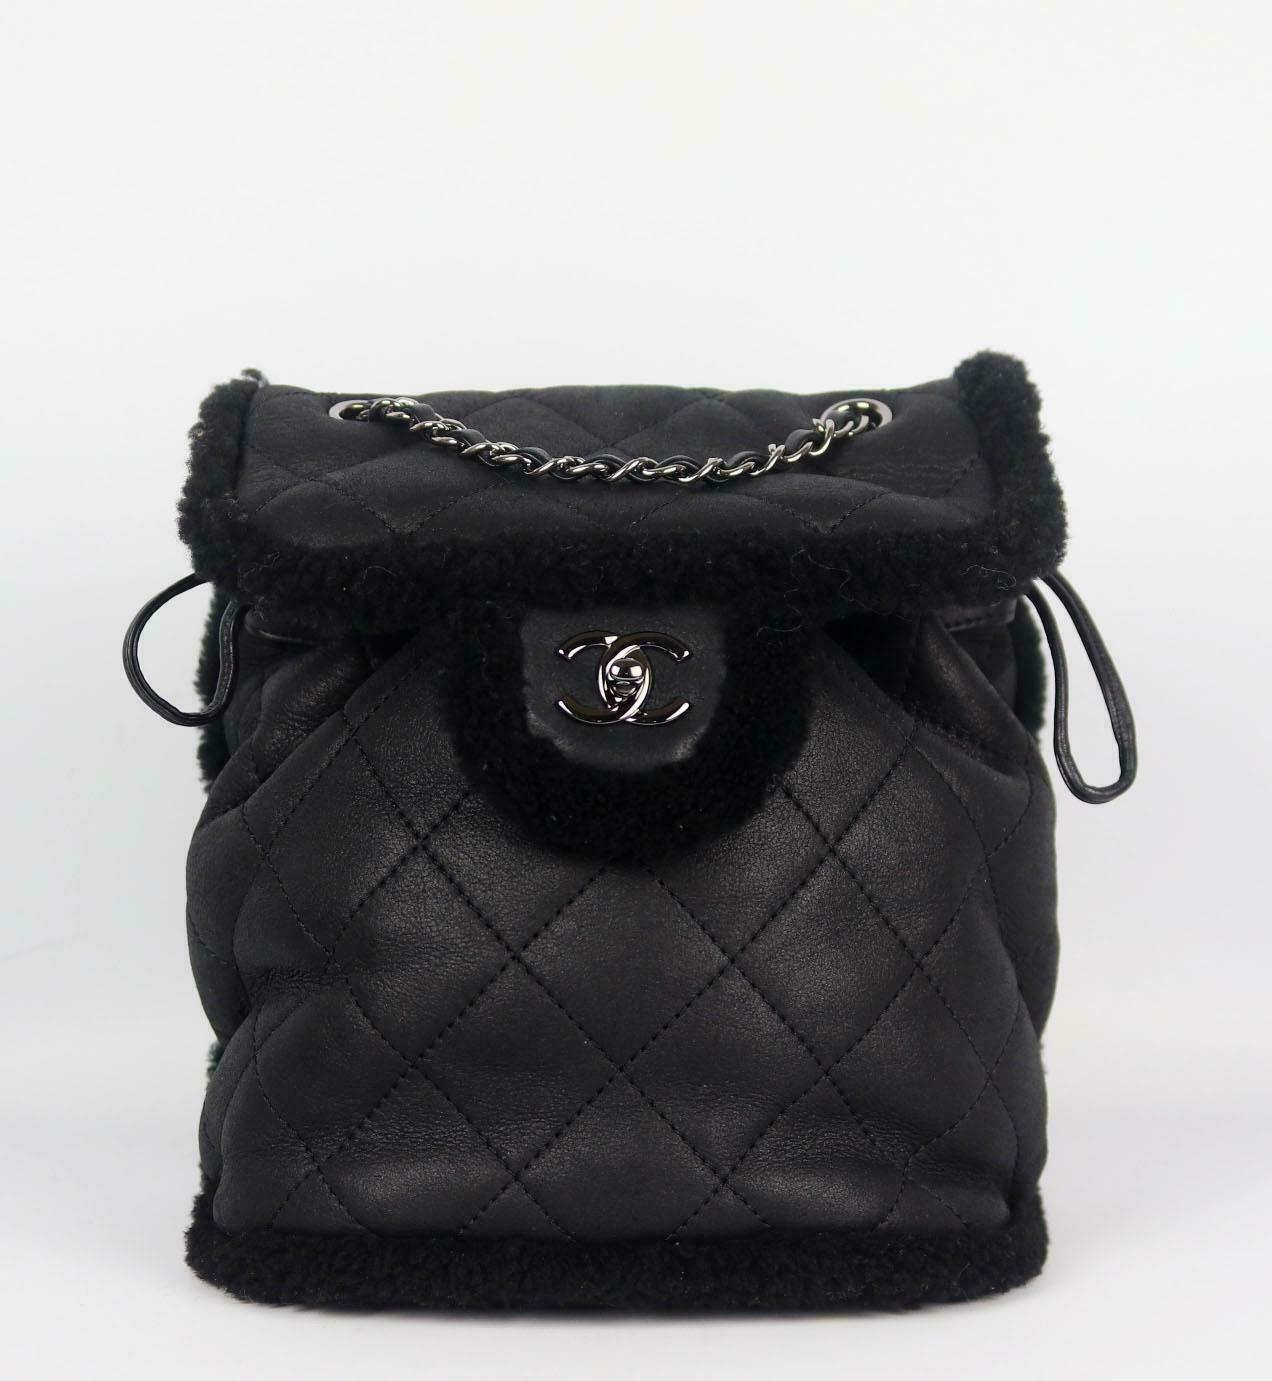 Fabriqué en Italie, ce magnifique sac à dos 'Coco Neige' de Chanel a été réalisé en cuir d'agneau et en shearling noir à l'extérieur et en shearling noir à l'intérieur. Cette pièce est décorée du logo ruthniem-argent de Chanel sur le devant et finie